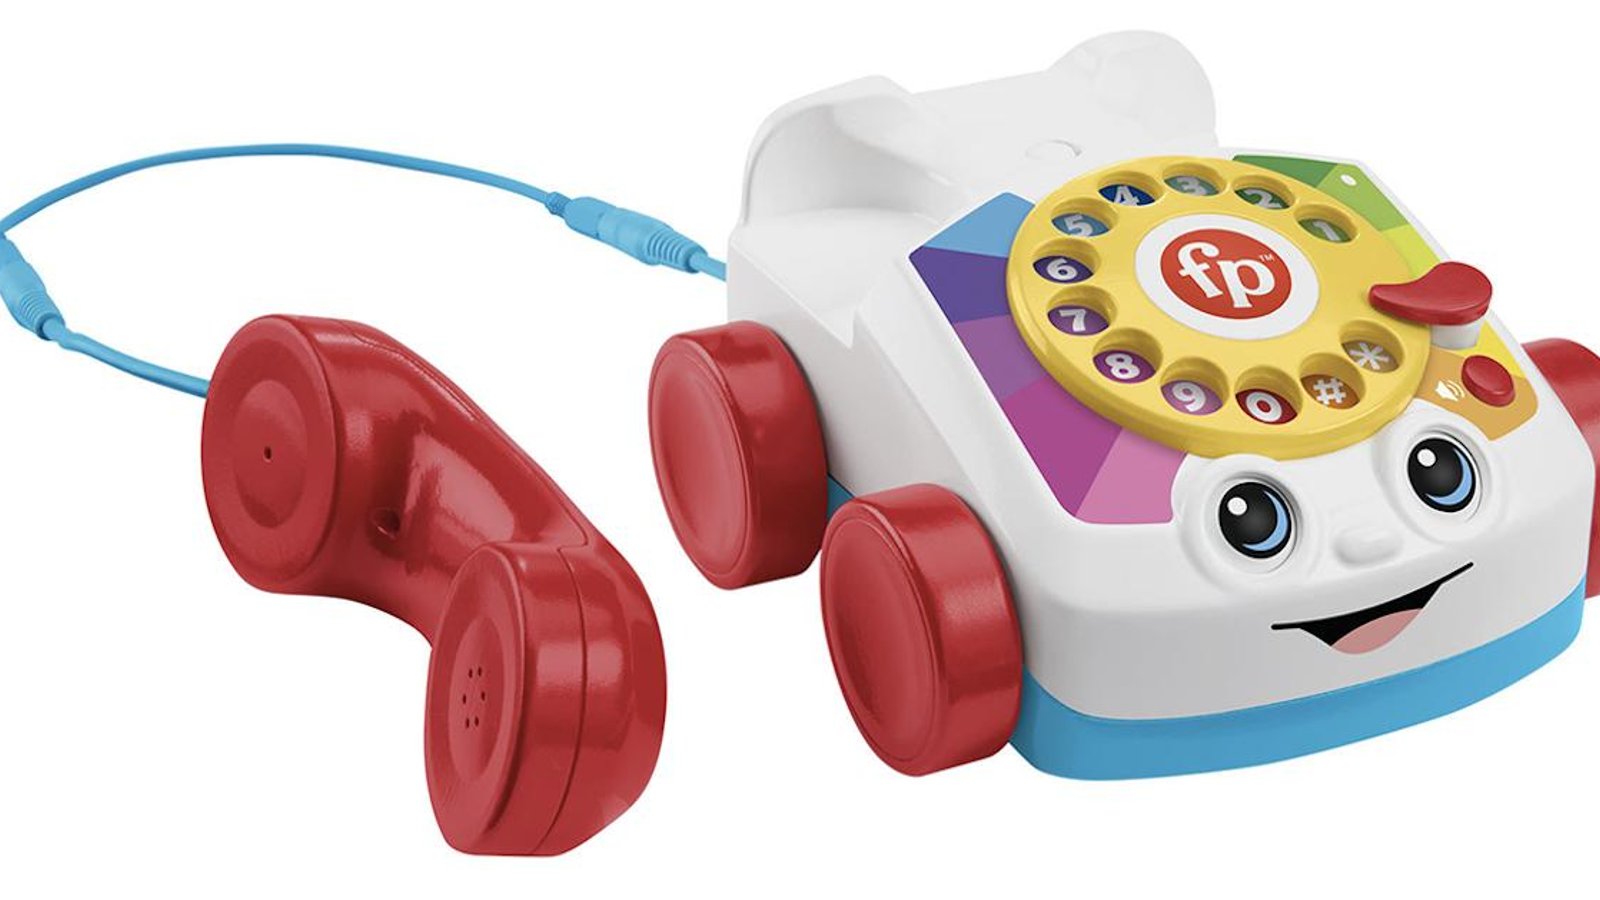 Le célèbre téléphone Fisher Price de notre enfance existe en version adulte